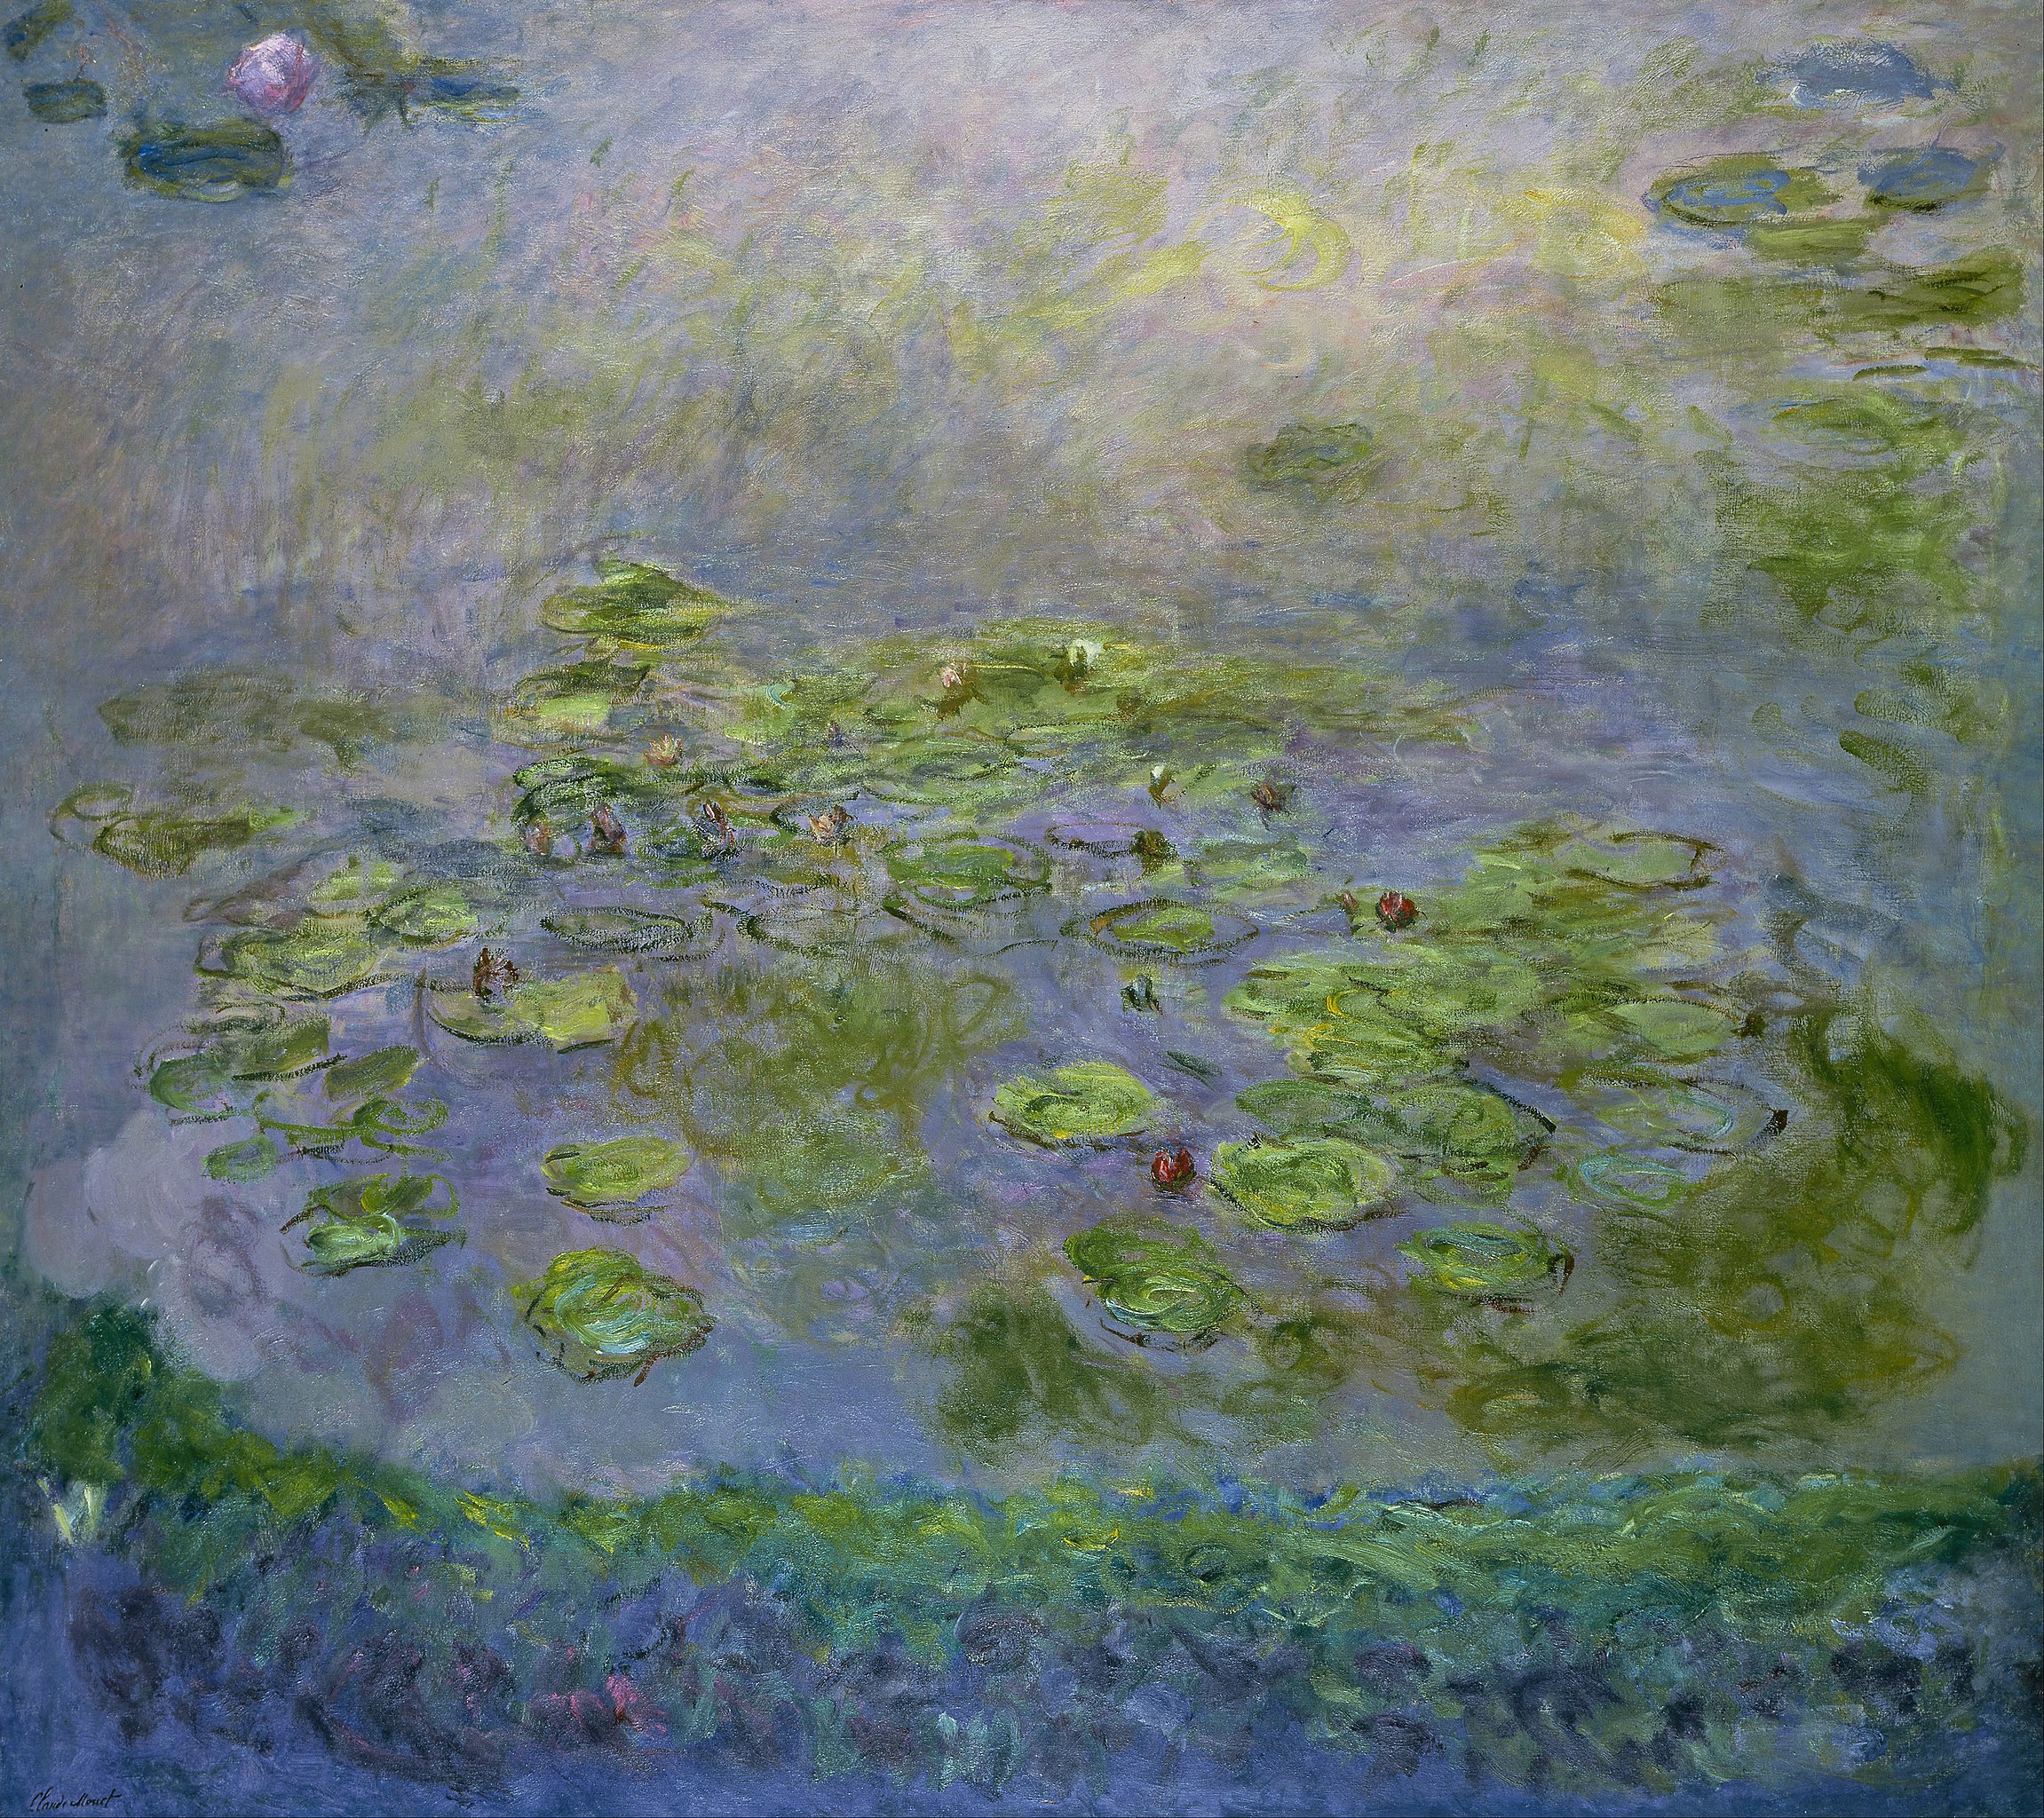 睡蓮 by Claude Monet - 1914〜17年頃 - 201.6 x 181 cm 